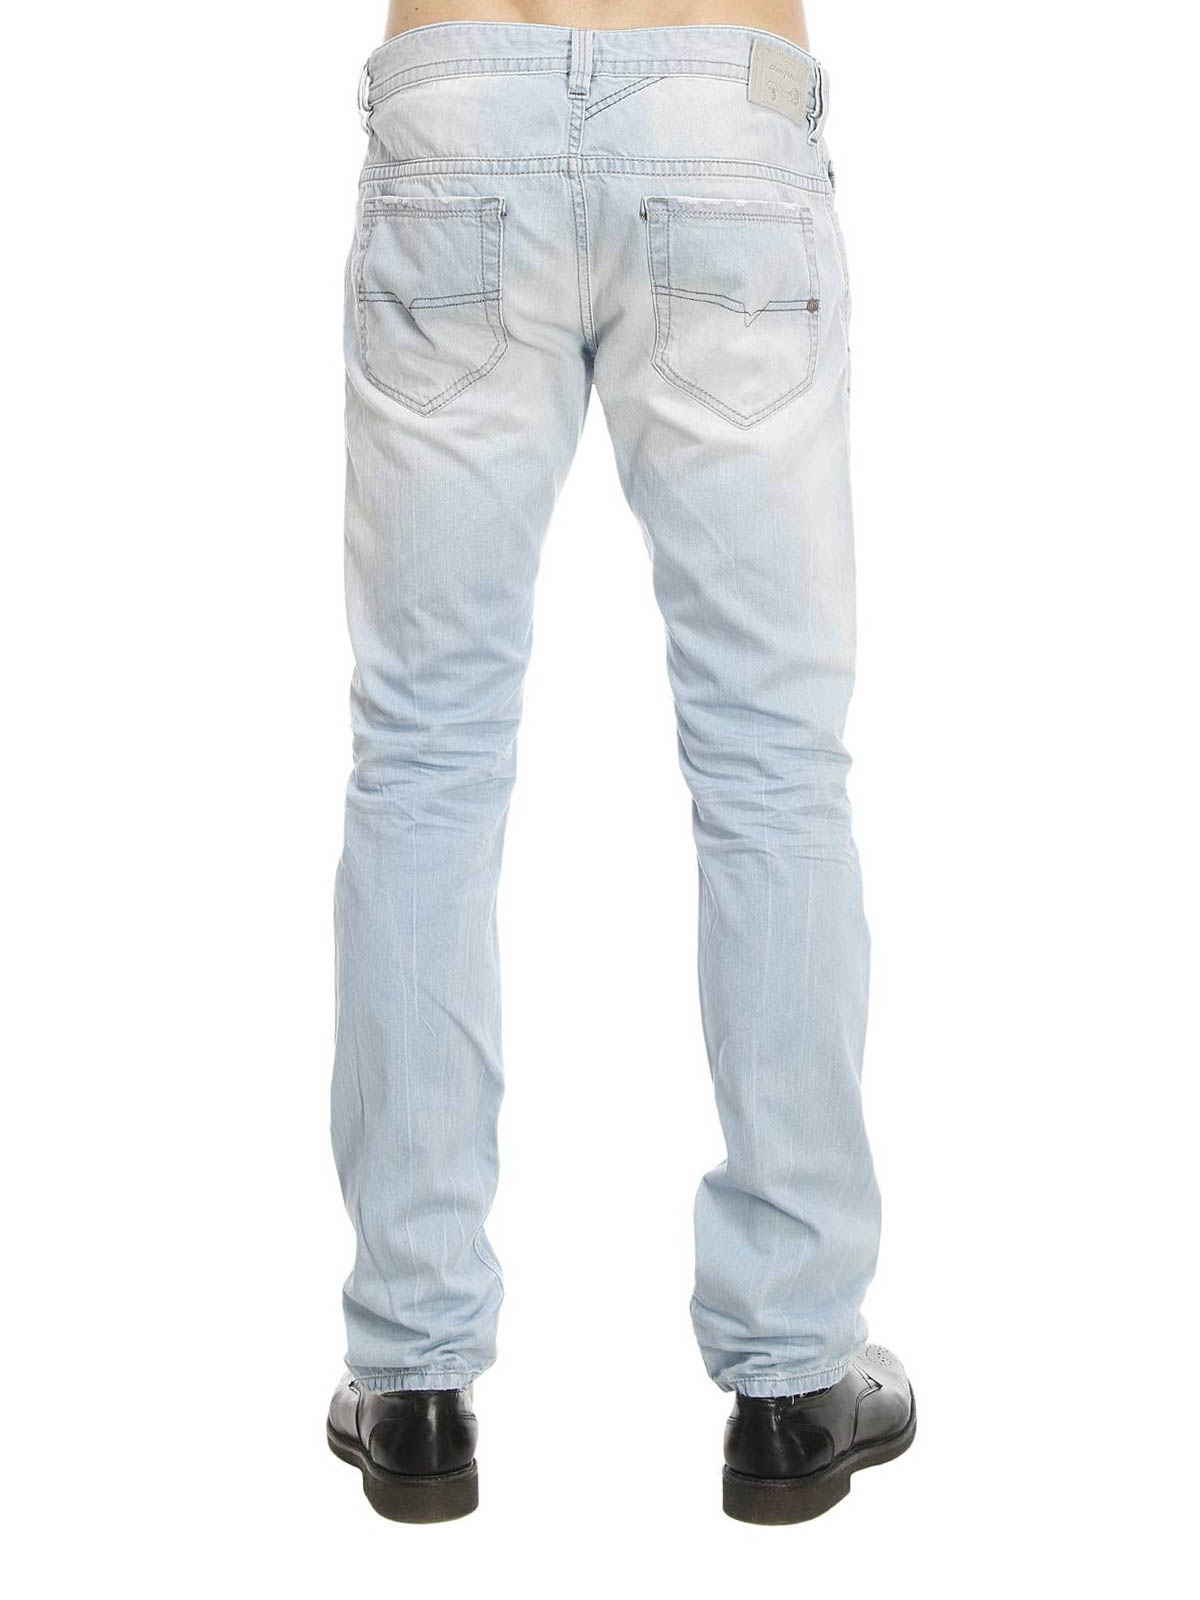 Twee graden hoeveelheid verkoop Berekening Skinny jeans Diesel - Thavar skinny jeans - 00CKS1852I01 | iKRIX.com